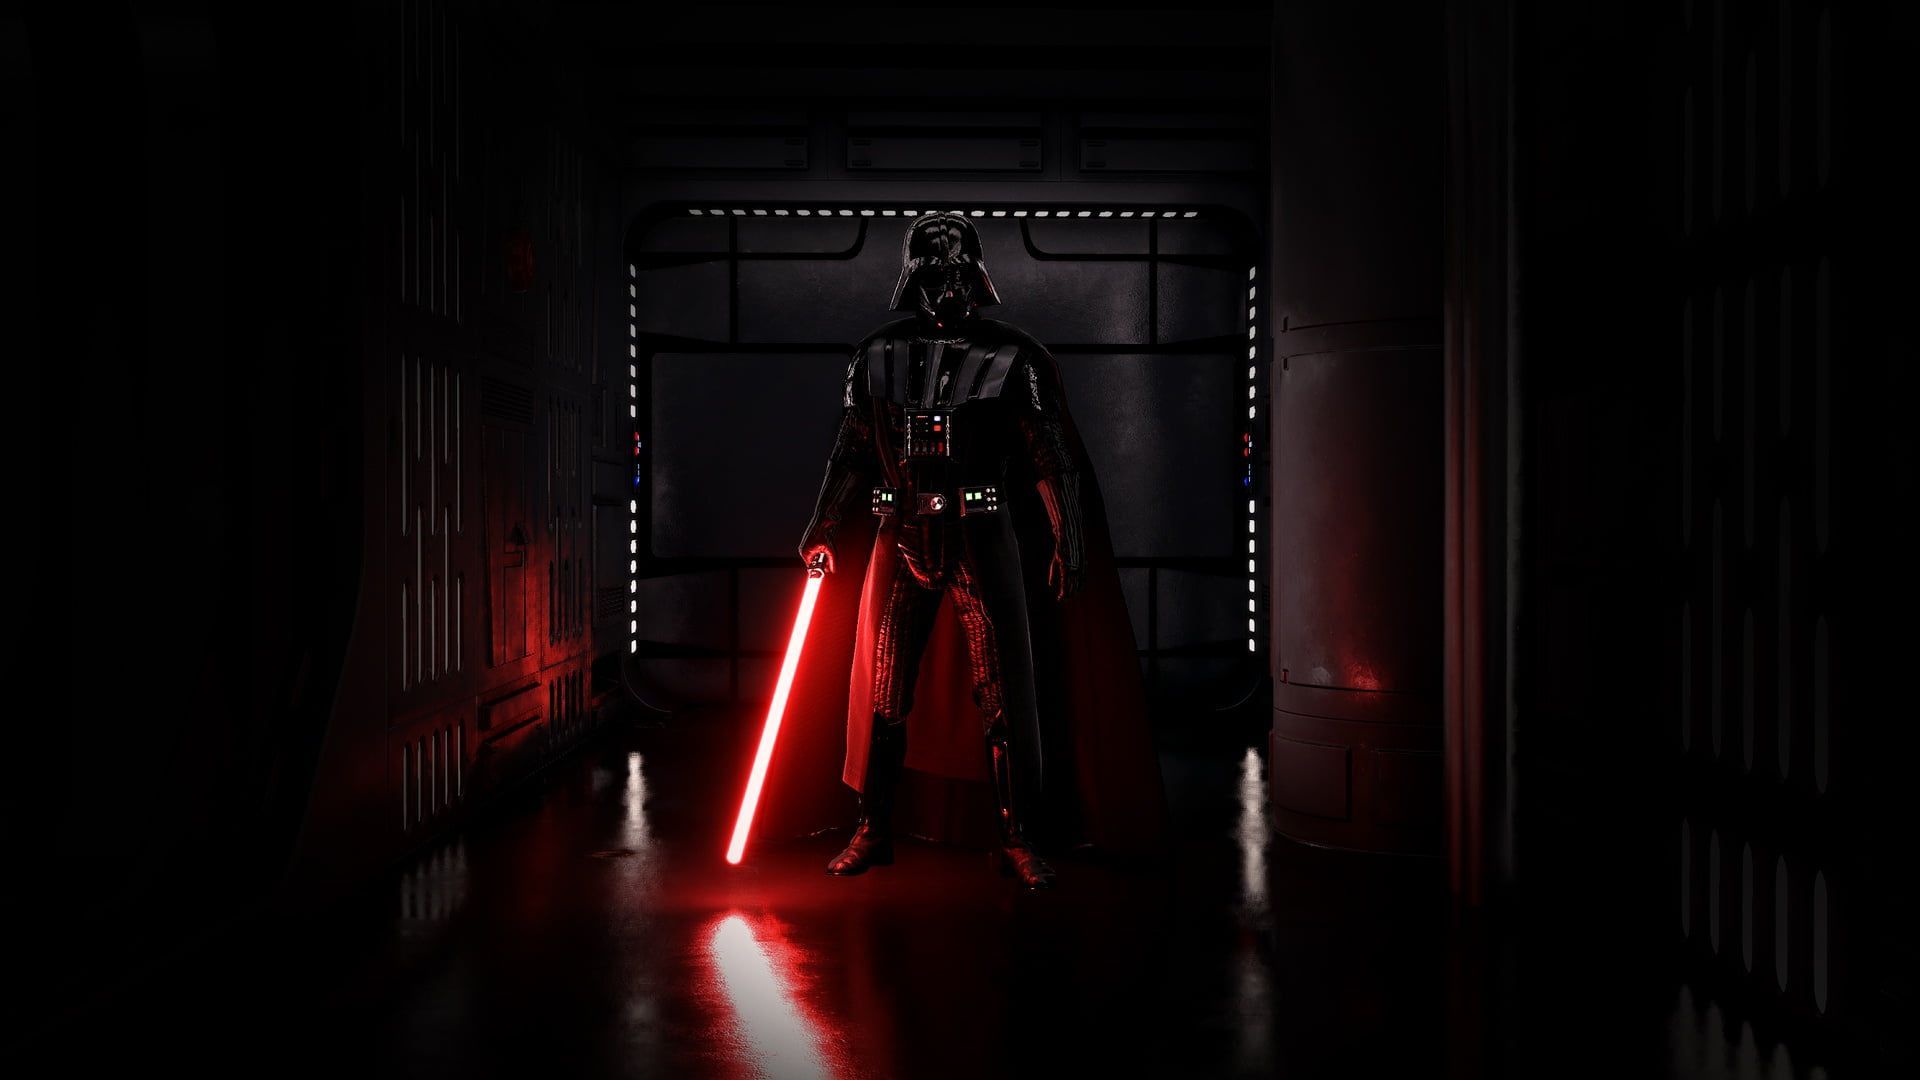 Star Wars Darth Vader digital wallpaper Darth Vader #Sith Star Wars #dark # lightsaber P #wal. Darth vader wallpaper, Star wars wallpaper, Dark side star wars